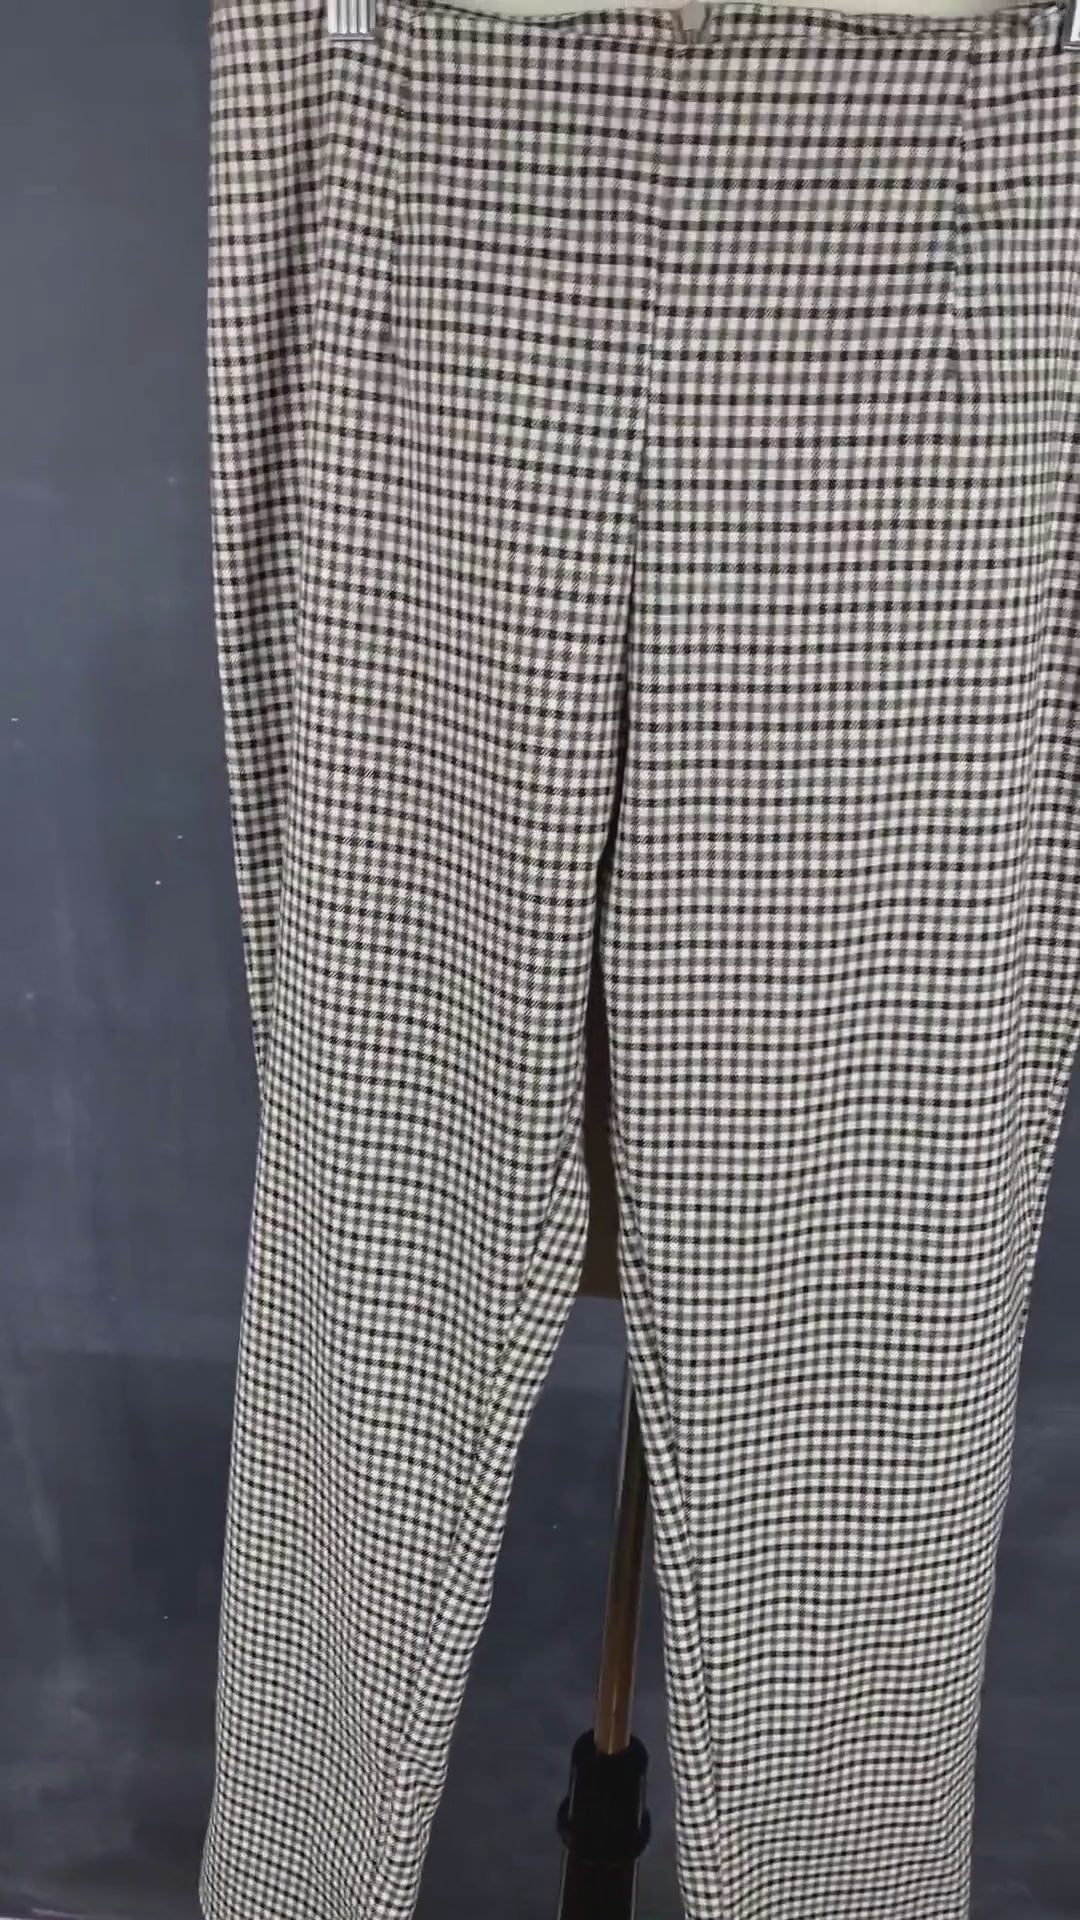 Pantalon pied de poule automnal, marque Essentiels Co Mtl, taille medium (petit). Vue de la vidéo qui présente tous les détails du pantalon.